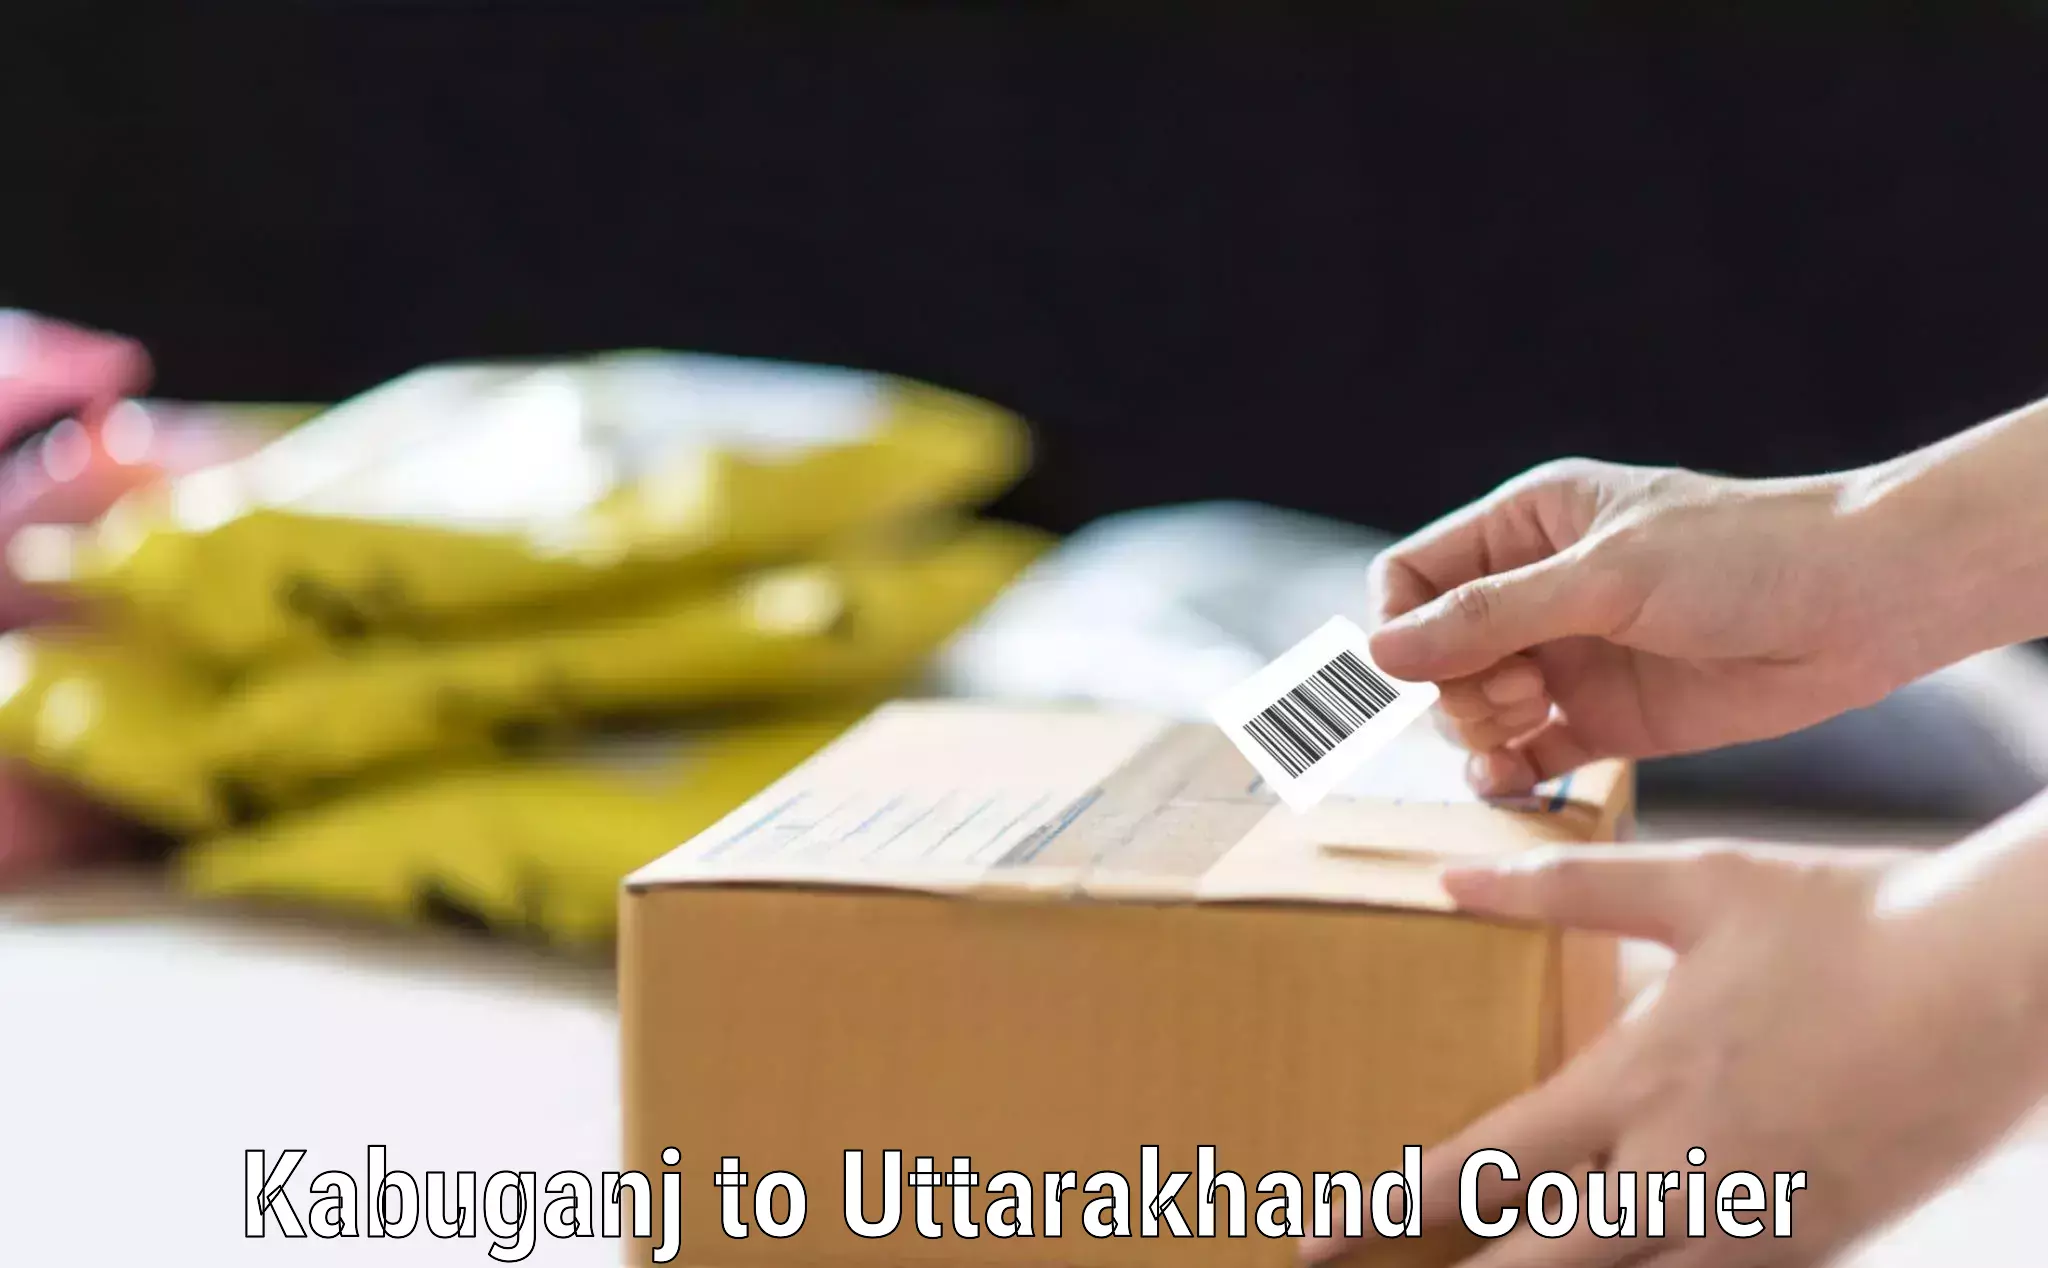 Luggage courier services Kabuganj to Uttarakhand